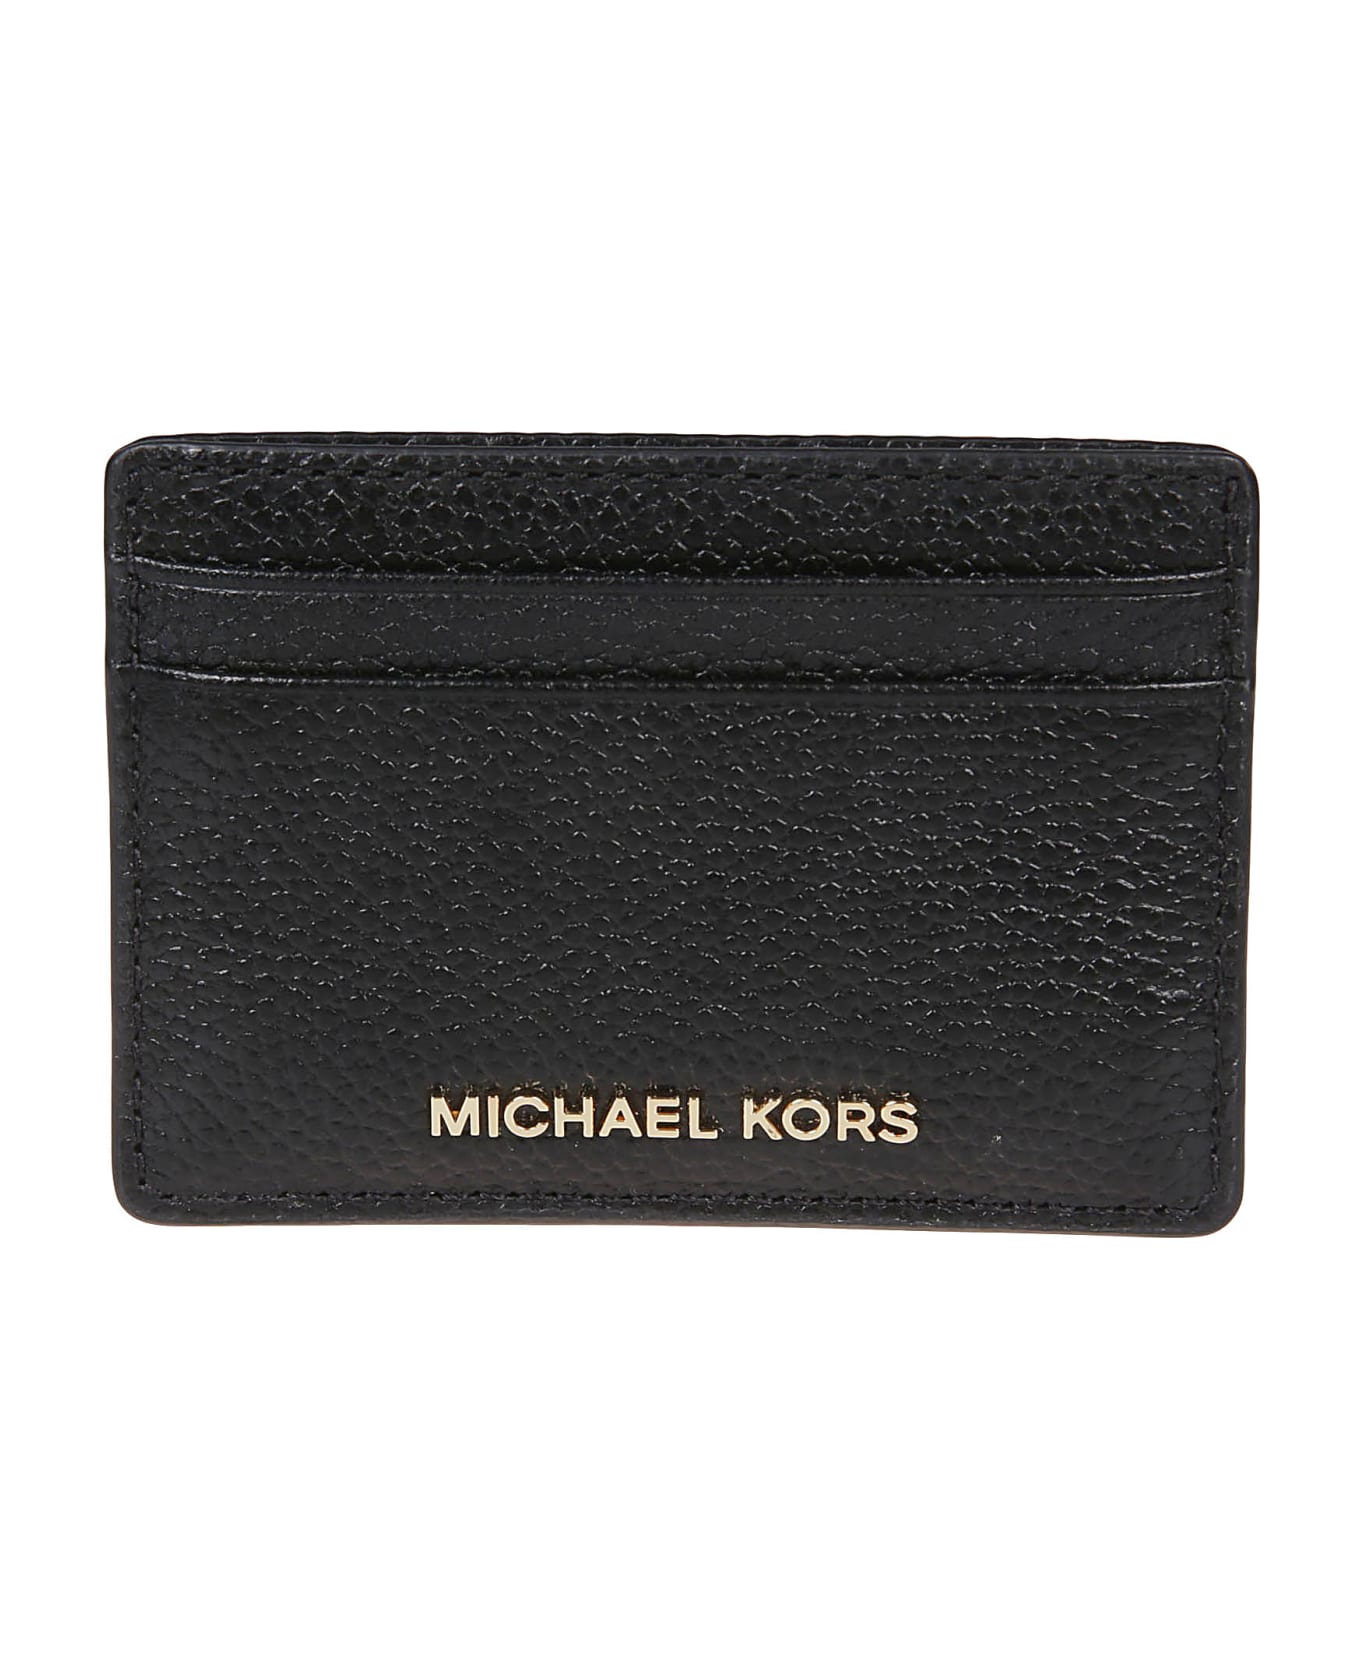 Michael Kors Jet Set Credit Card Holder - Black